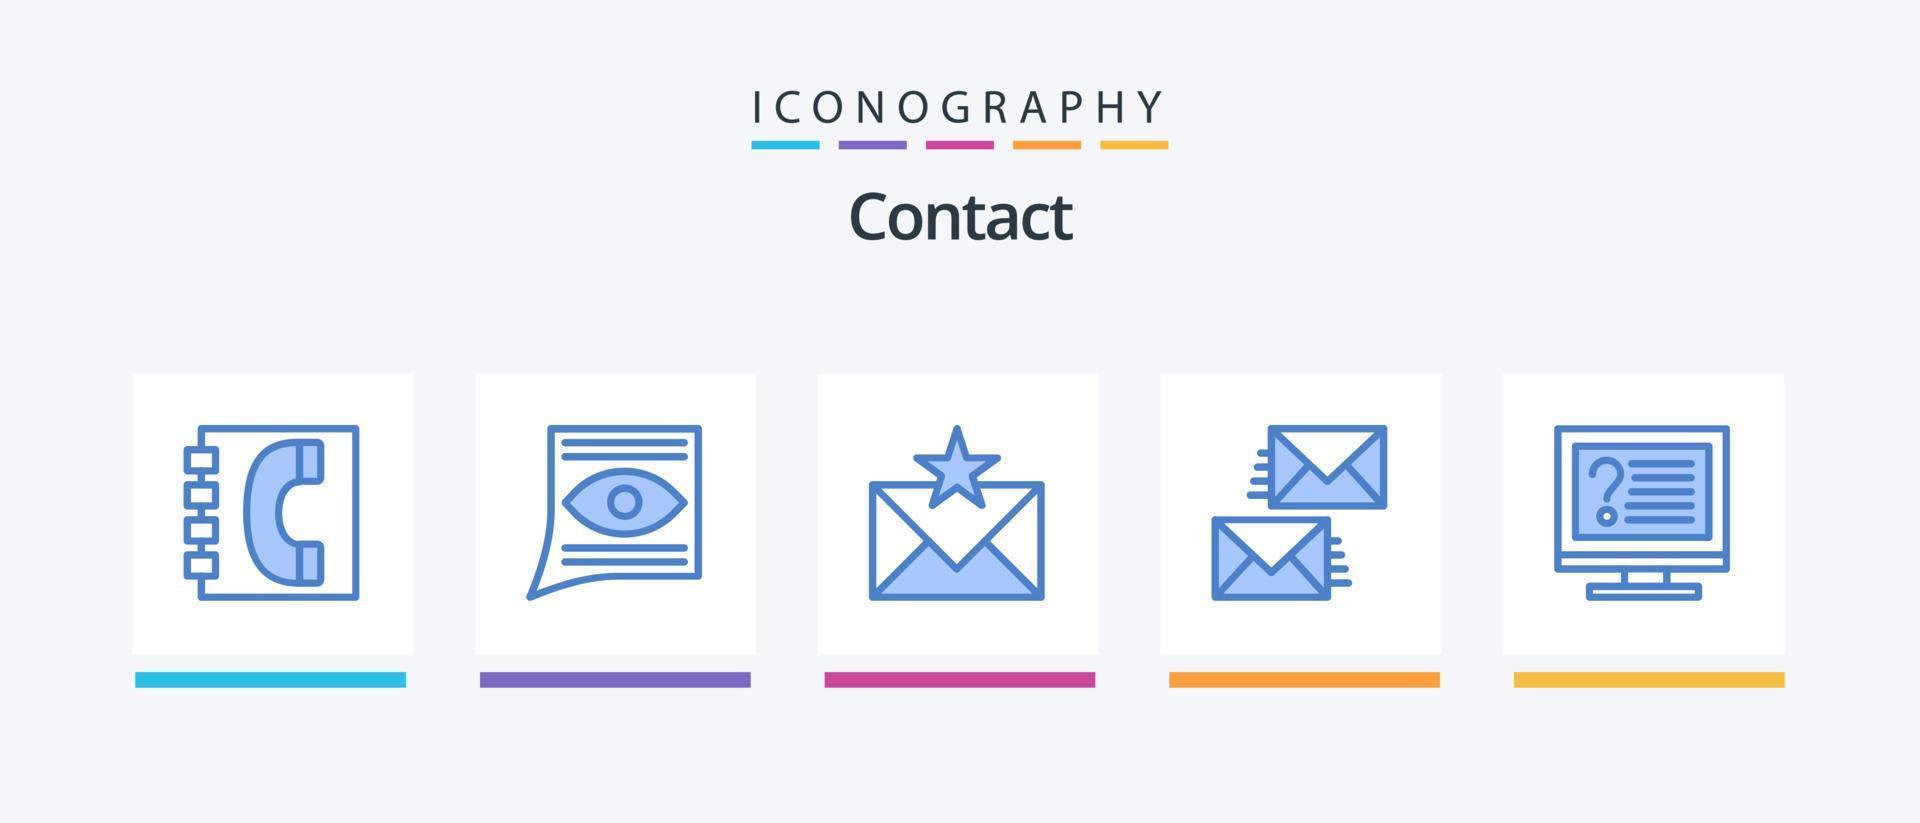 contactez le pack d'icônes bleu 5, y compris contactez-nous. la communication. e-mail. favoris. enveloppe. conception d'icônes créatives vecteur